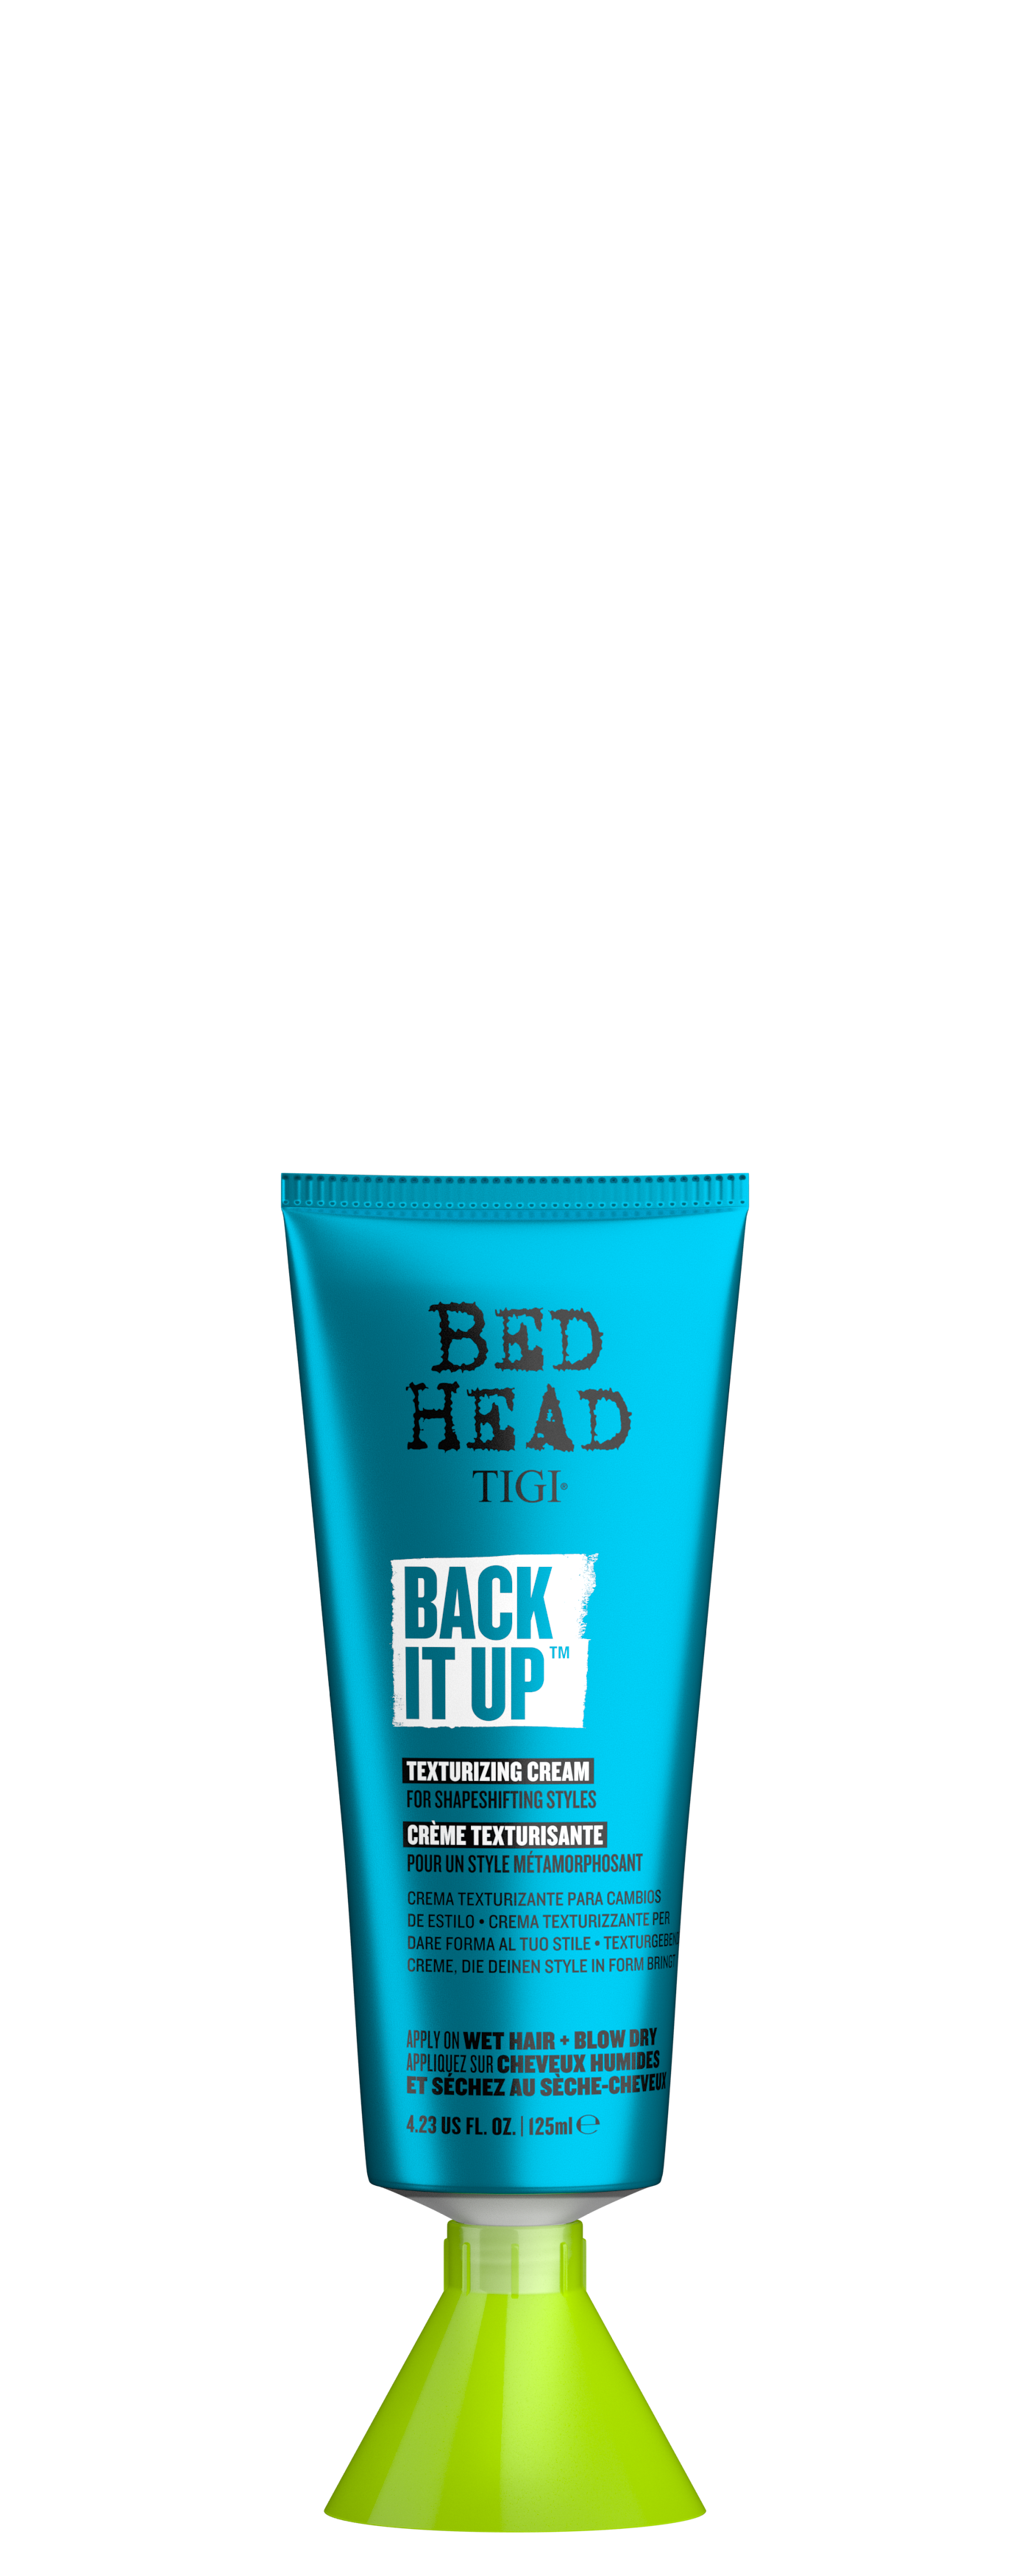 Несмываемые кремы для волос:  TIGI -  Текстурирующий крем для волос BACK IT UP BED HEAD (125 мл)